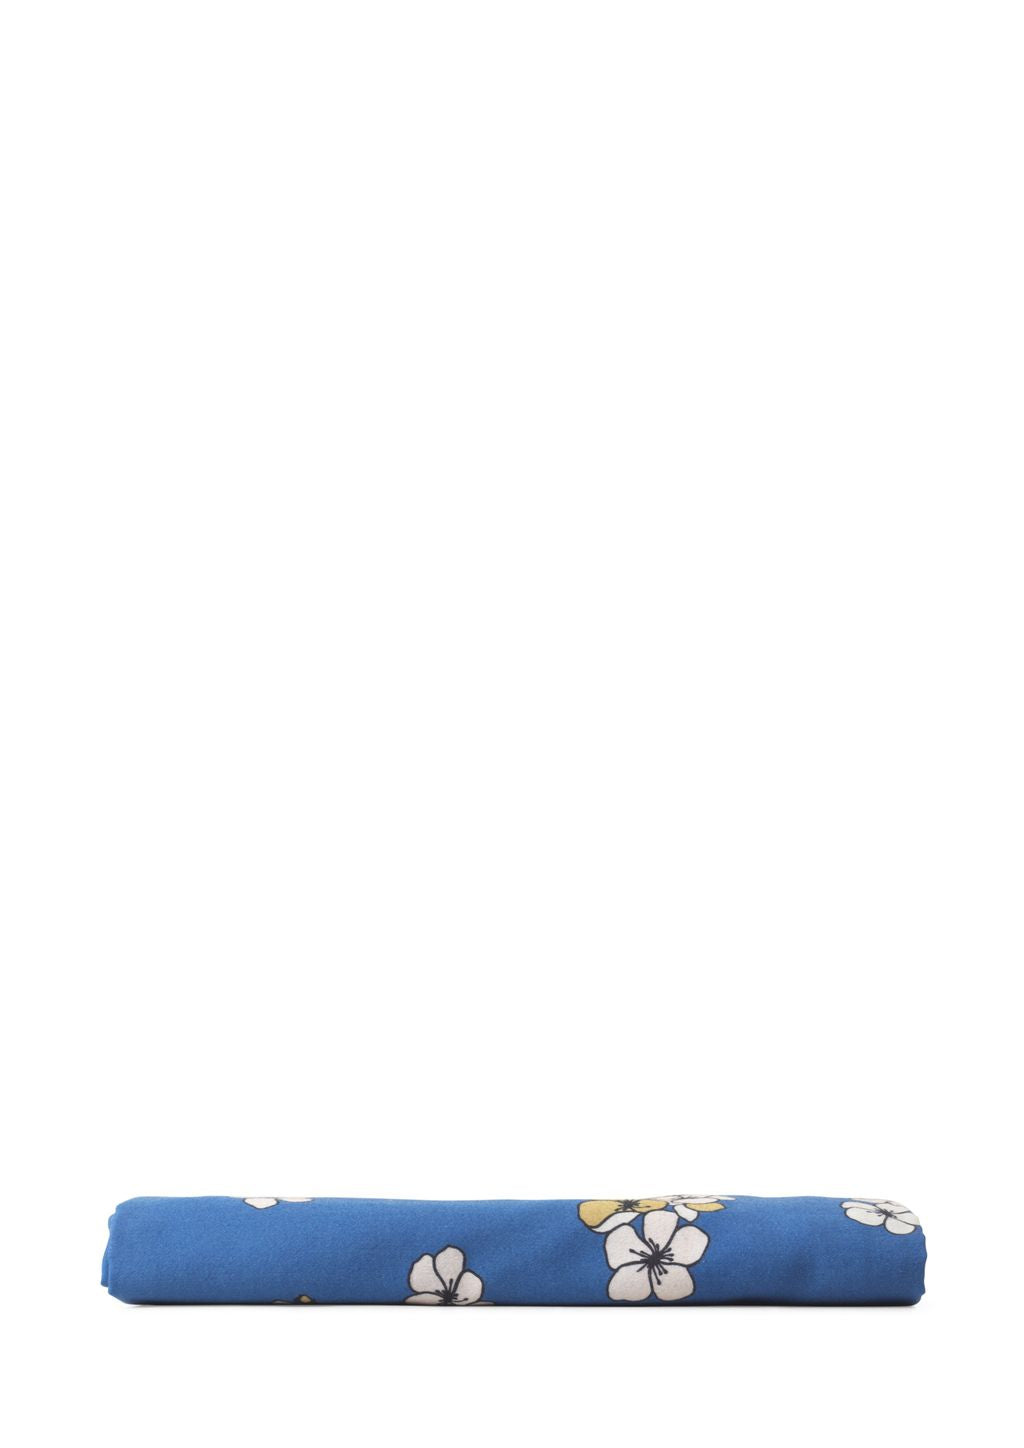 JUNA Grand behageligt pudebetræk 63 x60 cm, blå